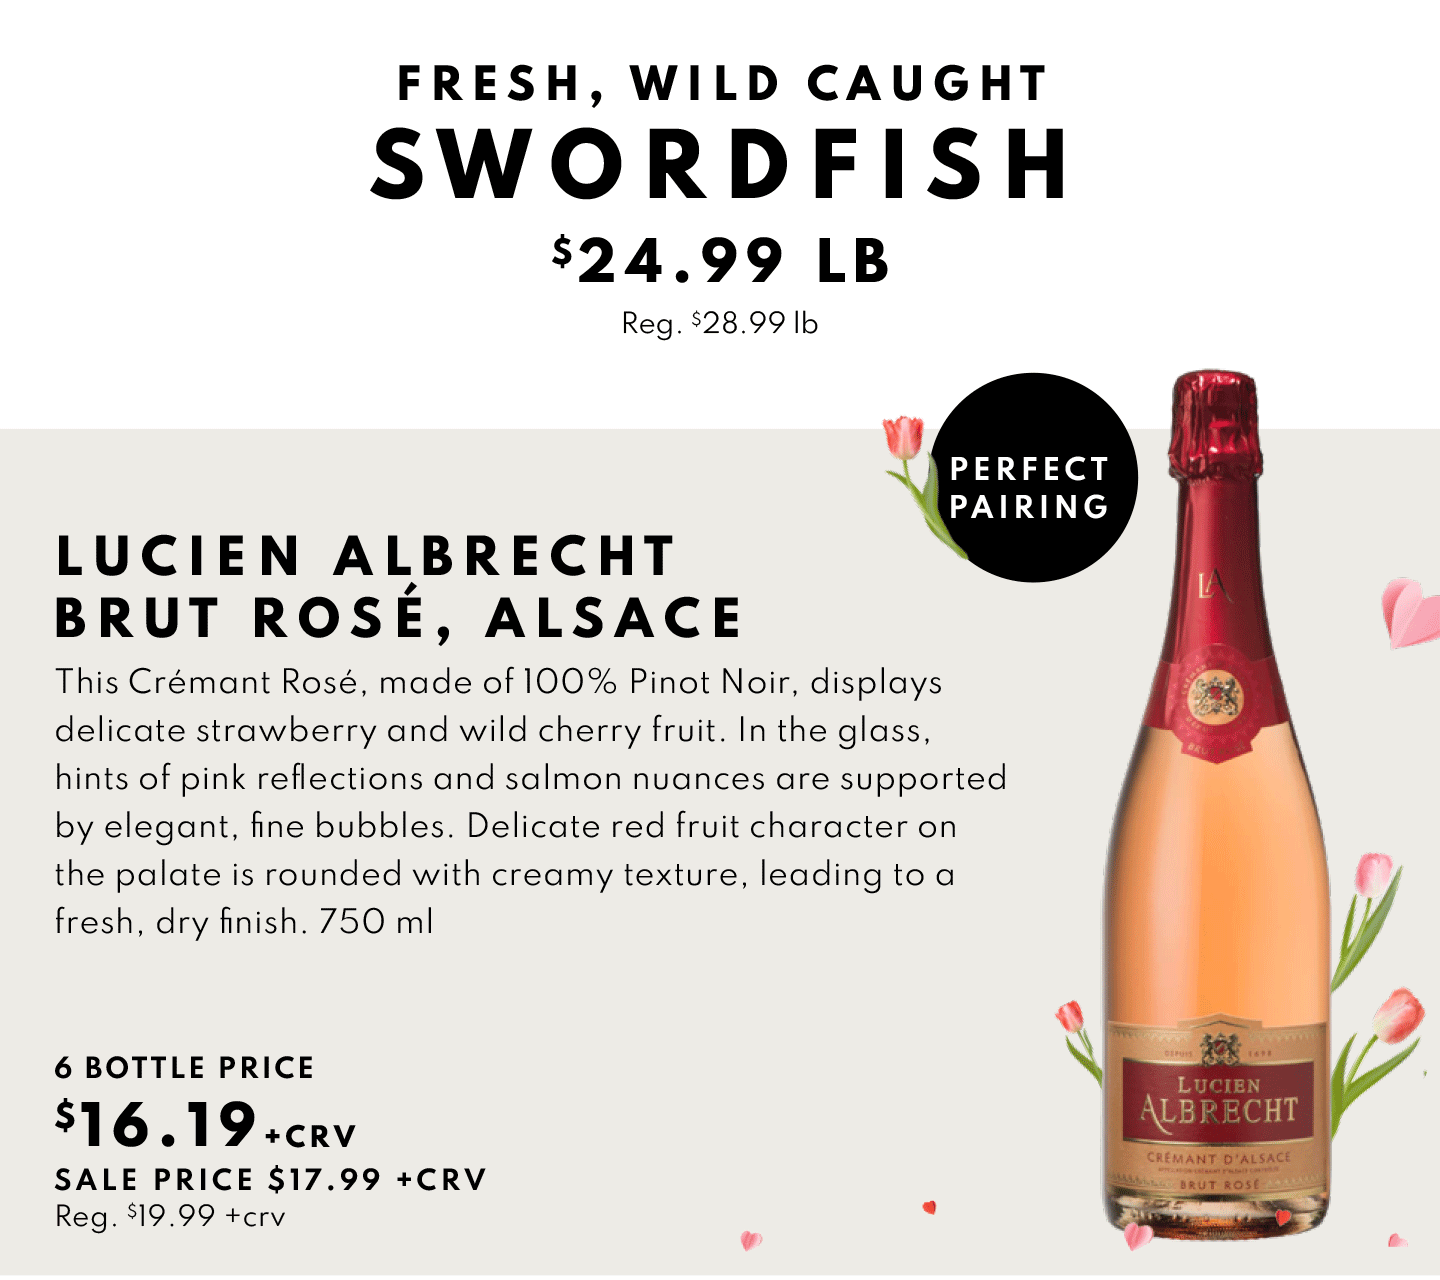 Lucien Albrecth Brut Rose, Alsace $16.19 (6 bottle price)